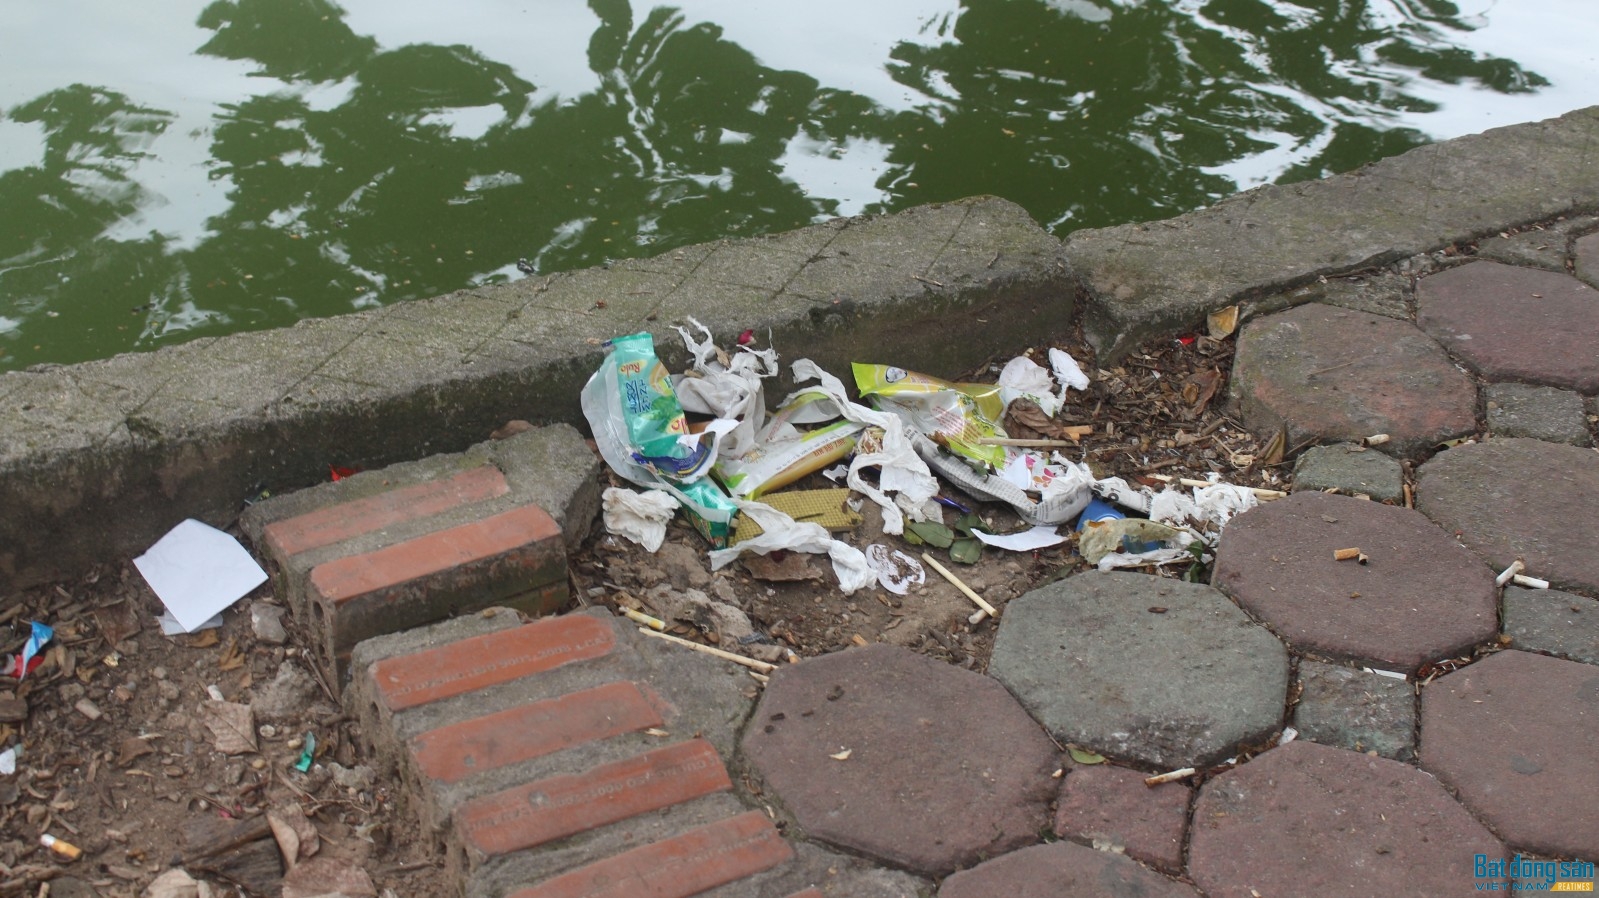 Gạch lát bong tróc, rác thải phủ đầy gây mất mỹ quan đô thị, đặc biệt là với một điểm du lịch nổi tiếng như hồ Gươm.